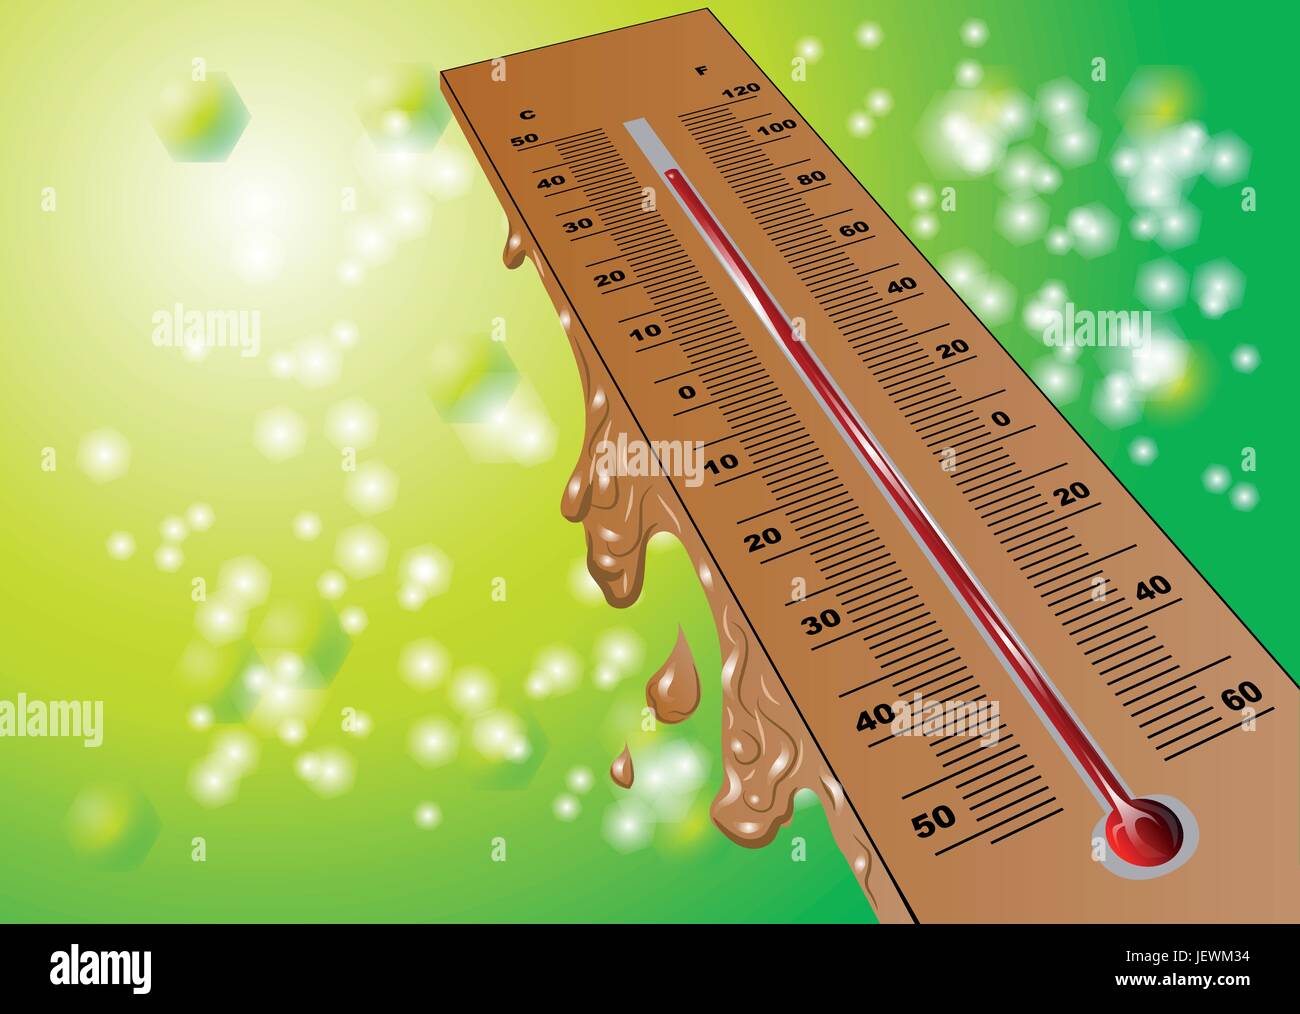 Sommer, sommerlich, Frühling, Wärme, Messung, Temperatur, Wetter, Anzahl, Stock Vektor